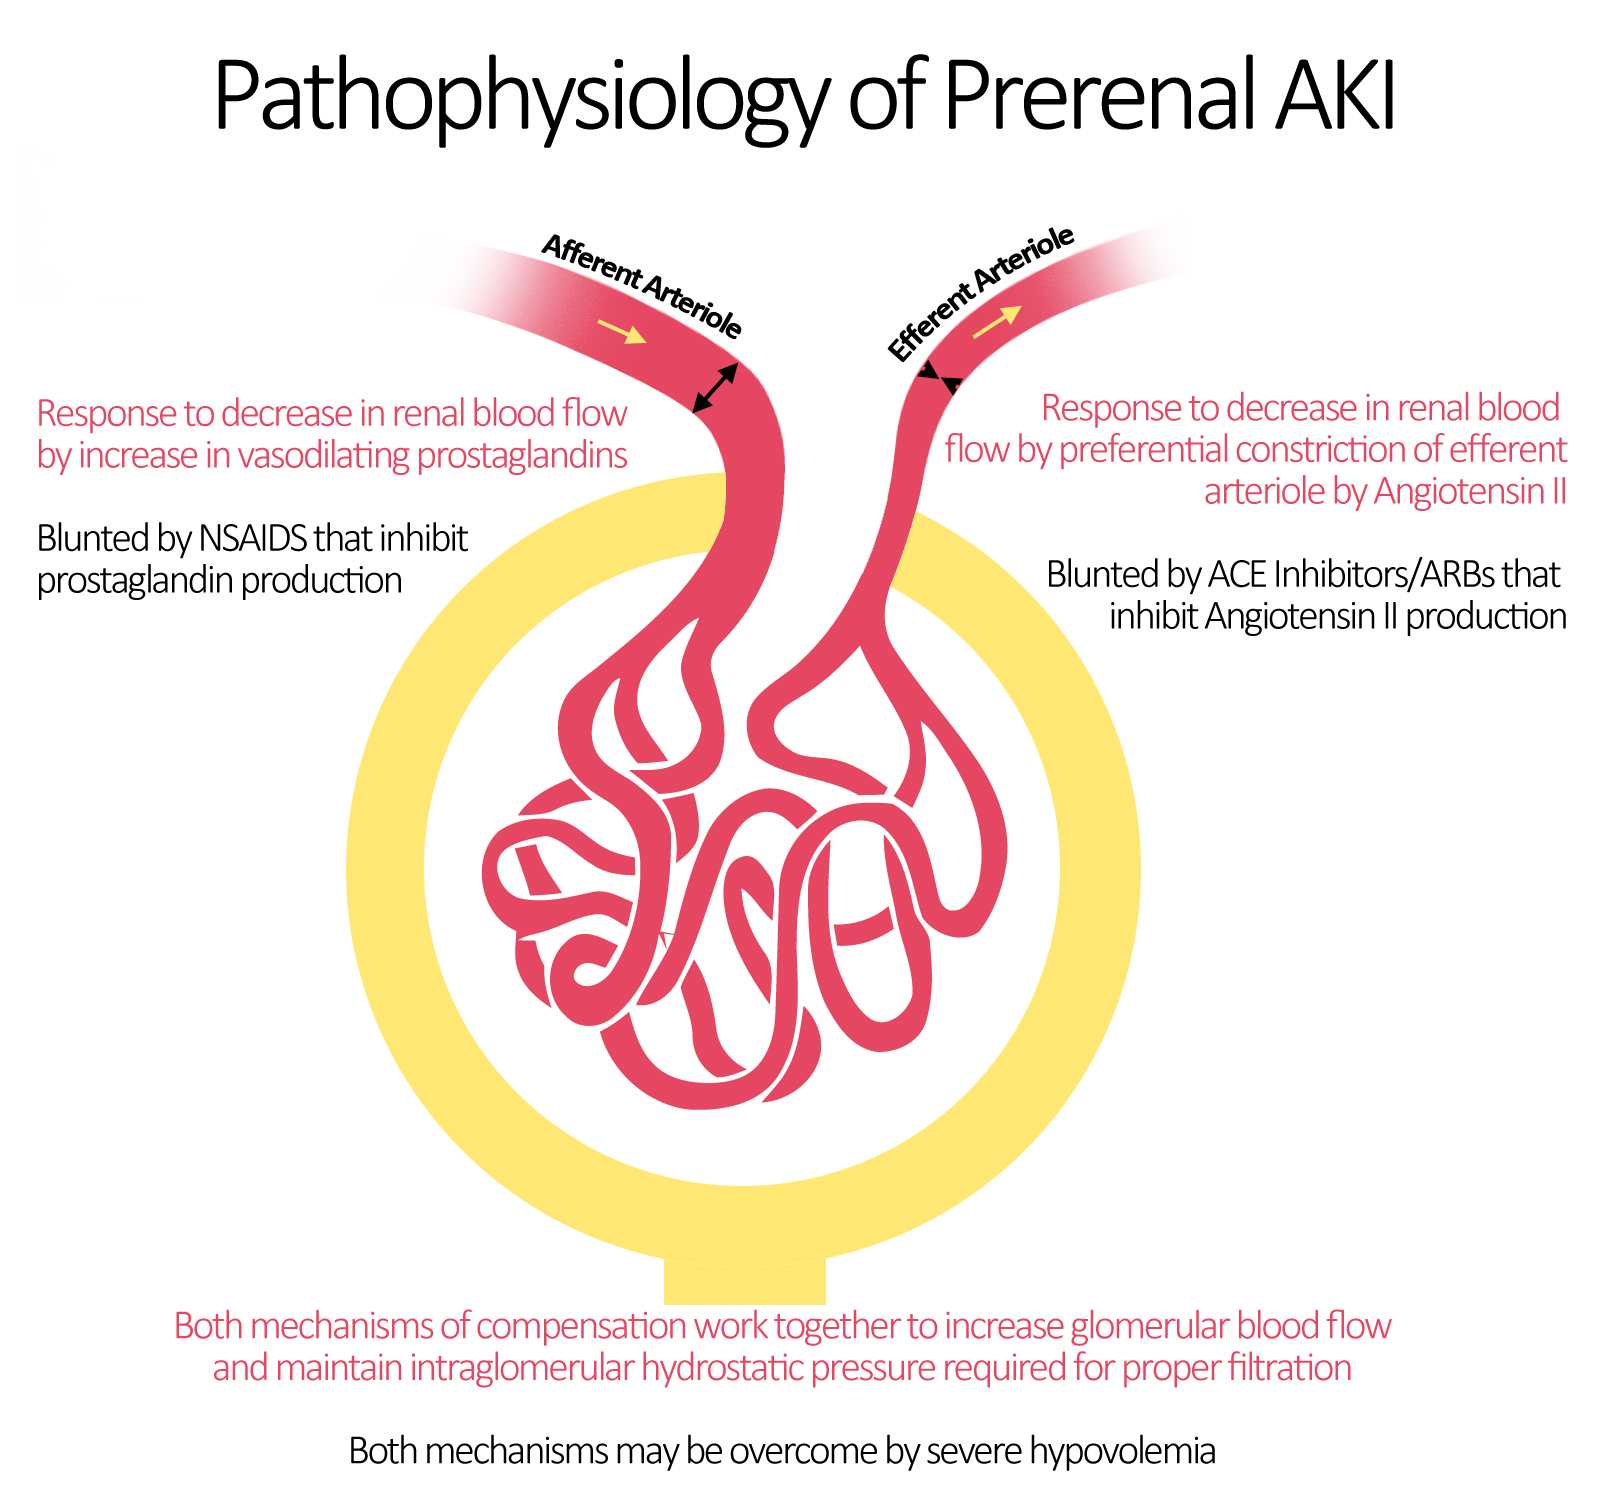 File:Pathophysiology of Prerenal AKI.jpeg